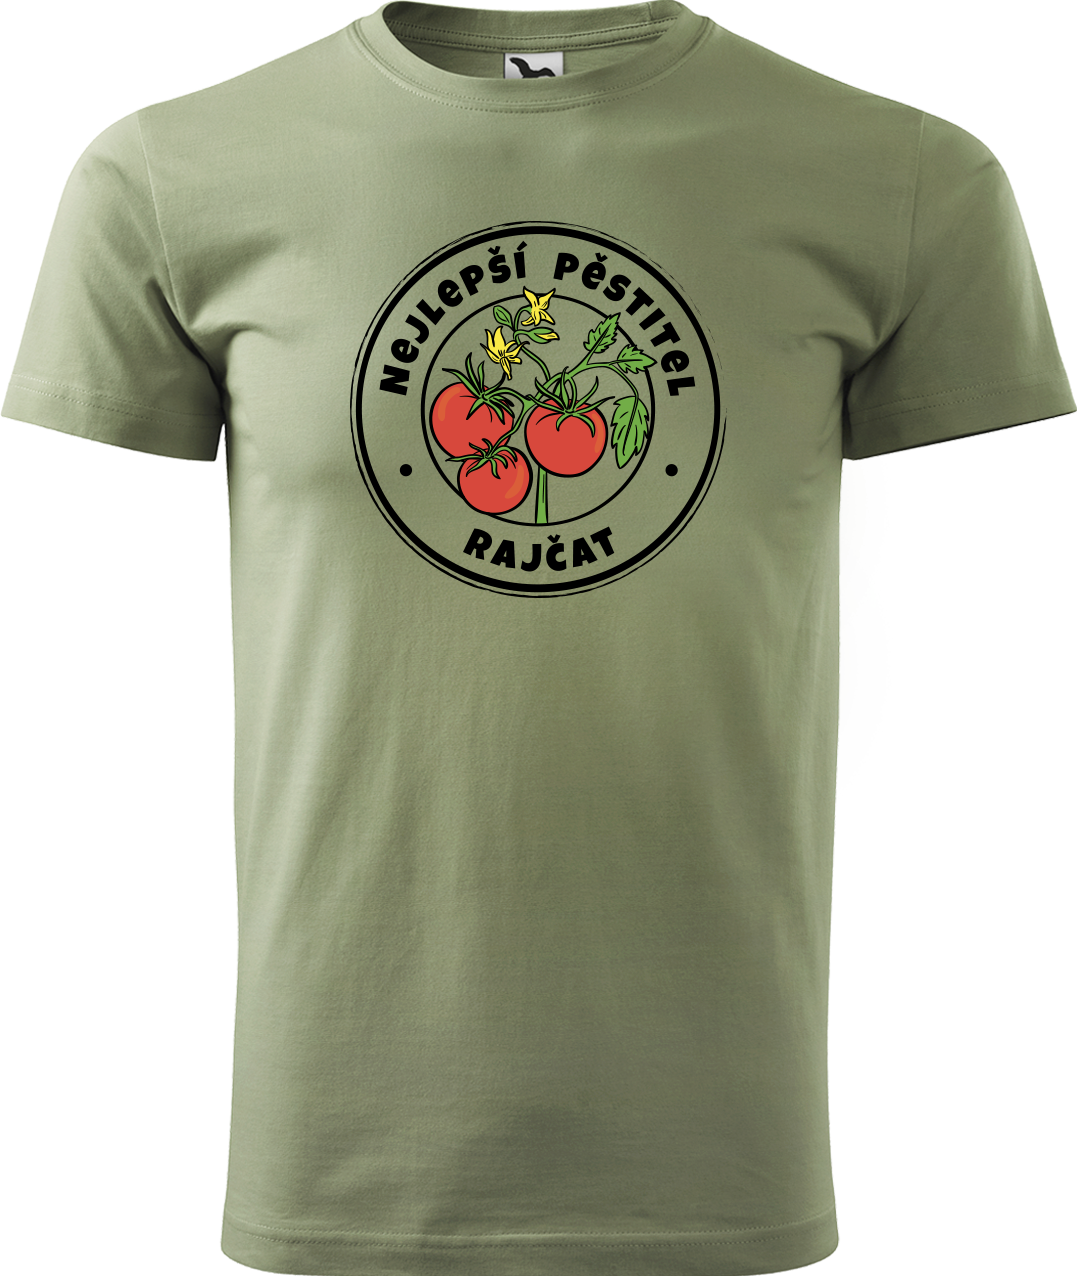 Tričko pro zahradníka - Nejlepší pěstitel rajčat Velikost: XL, Barva: Světlá khaki (28)